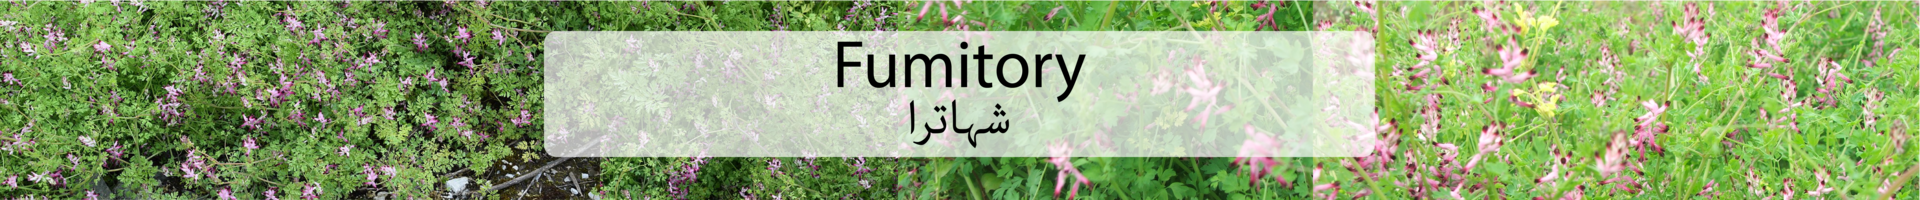 Fumitory / Ø´ÛØ§ØªØ±Ø§